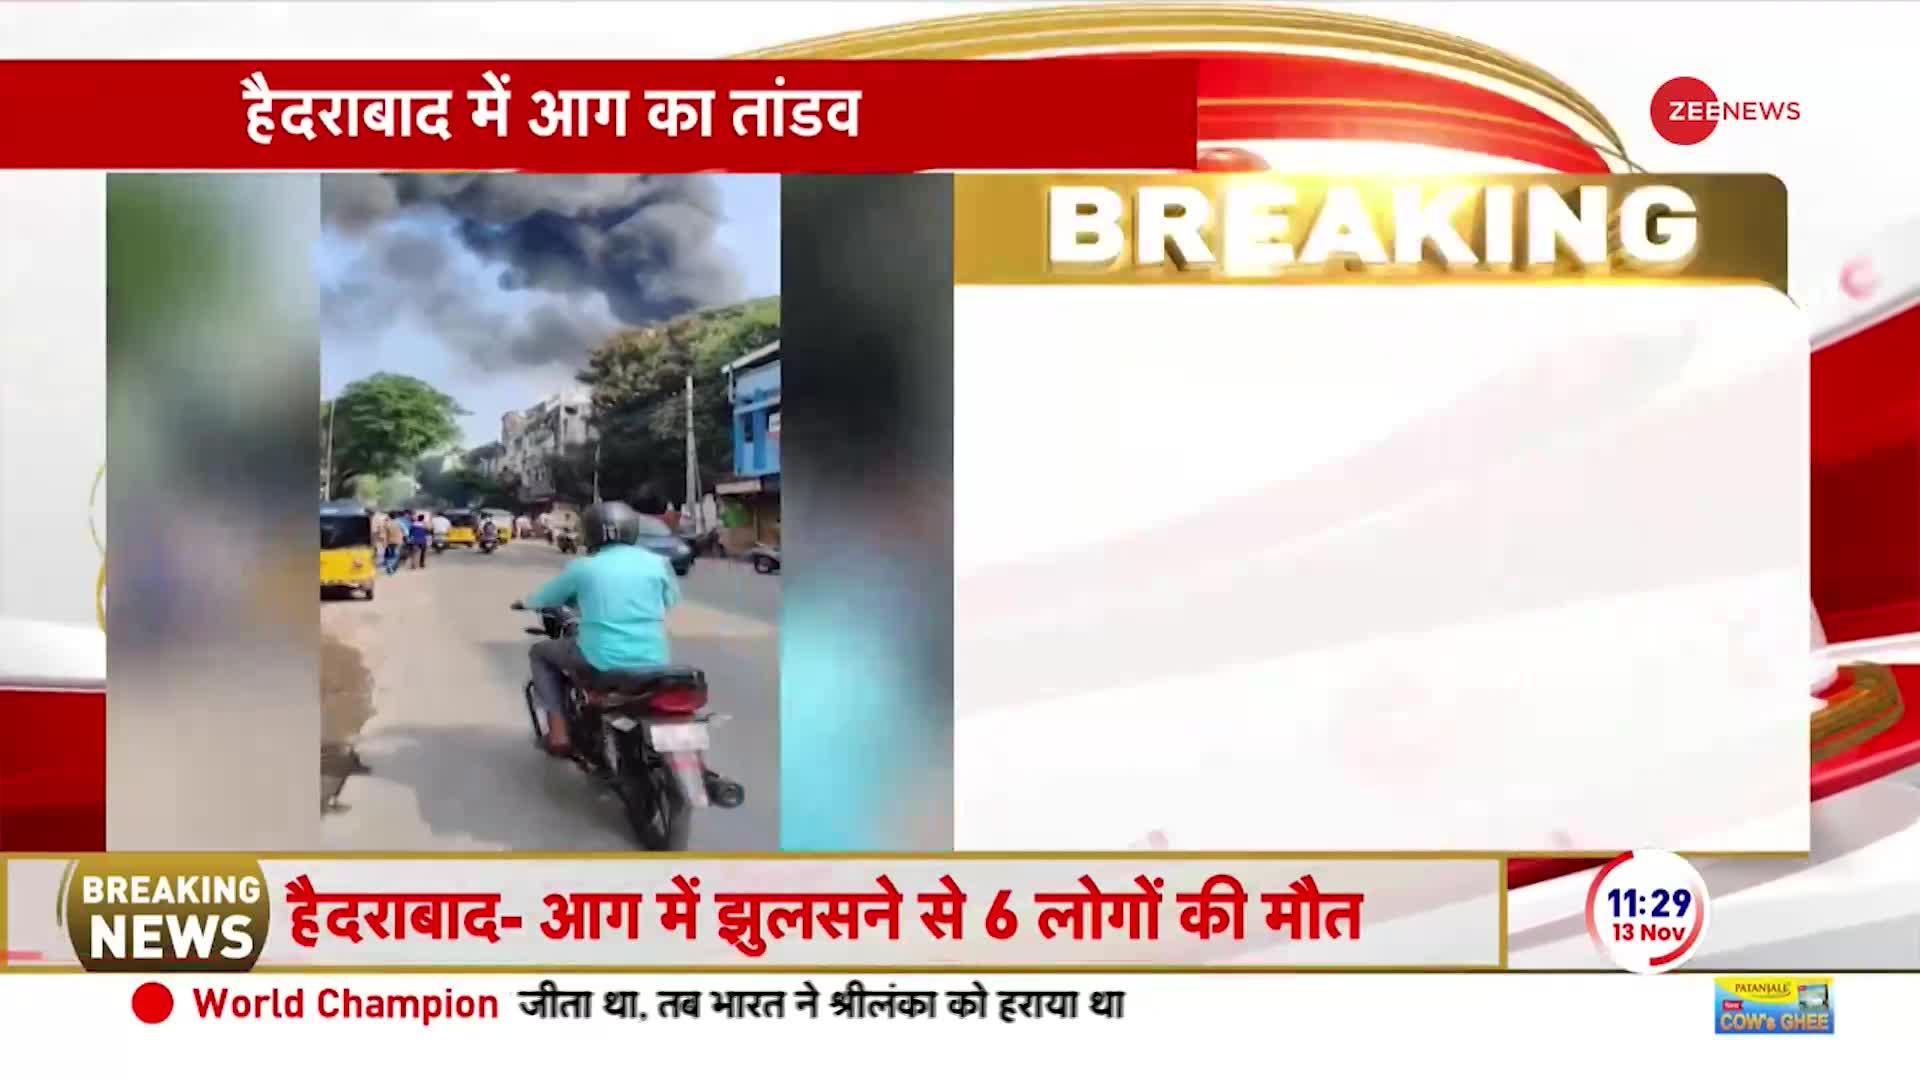 Breaking News: हैदराबाद में आग लगने से झुलसी 6 जिंदगी